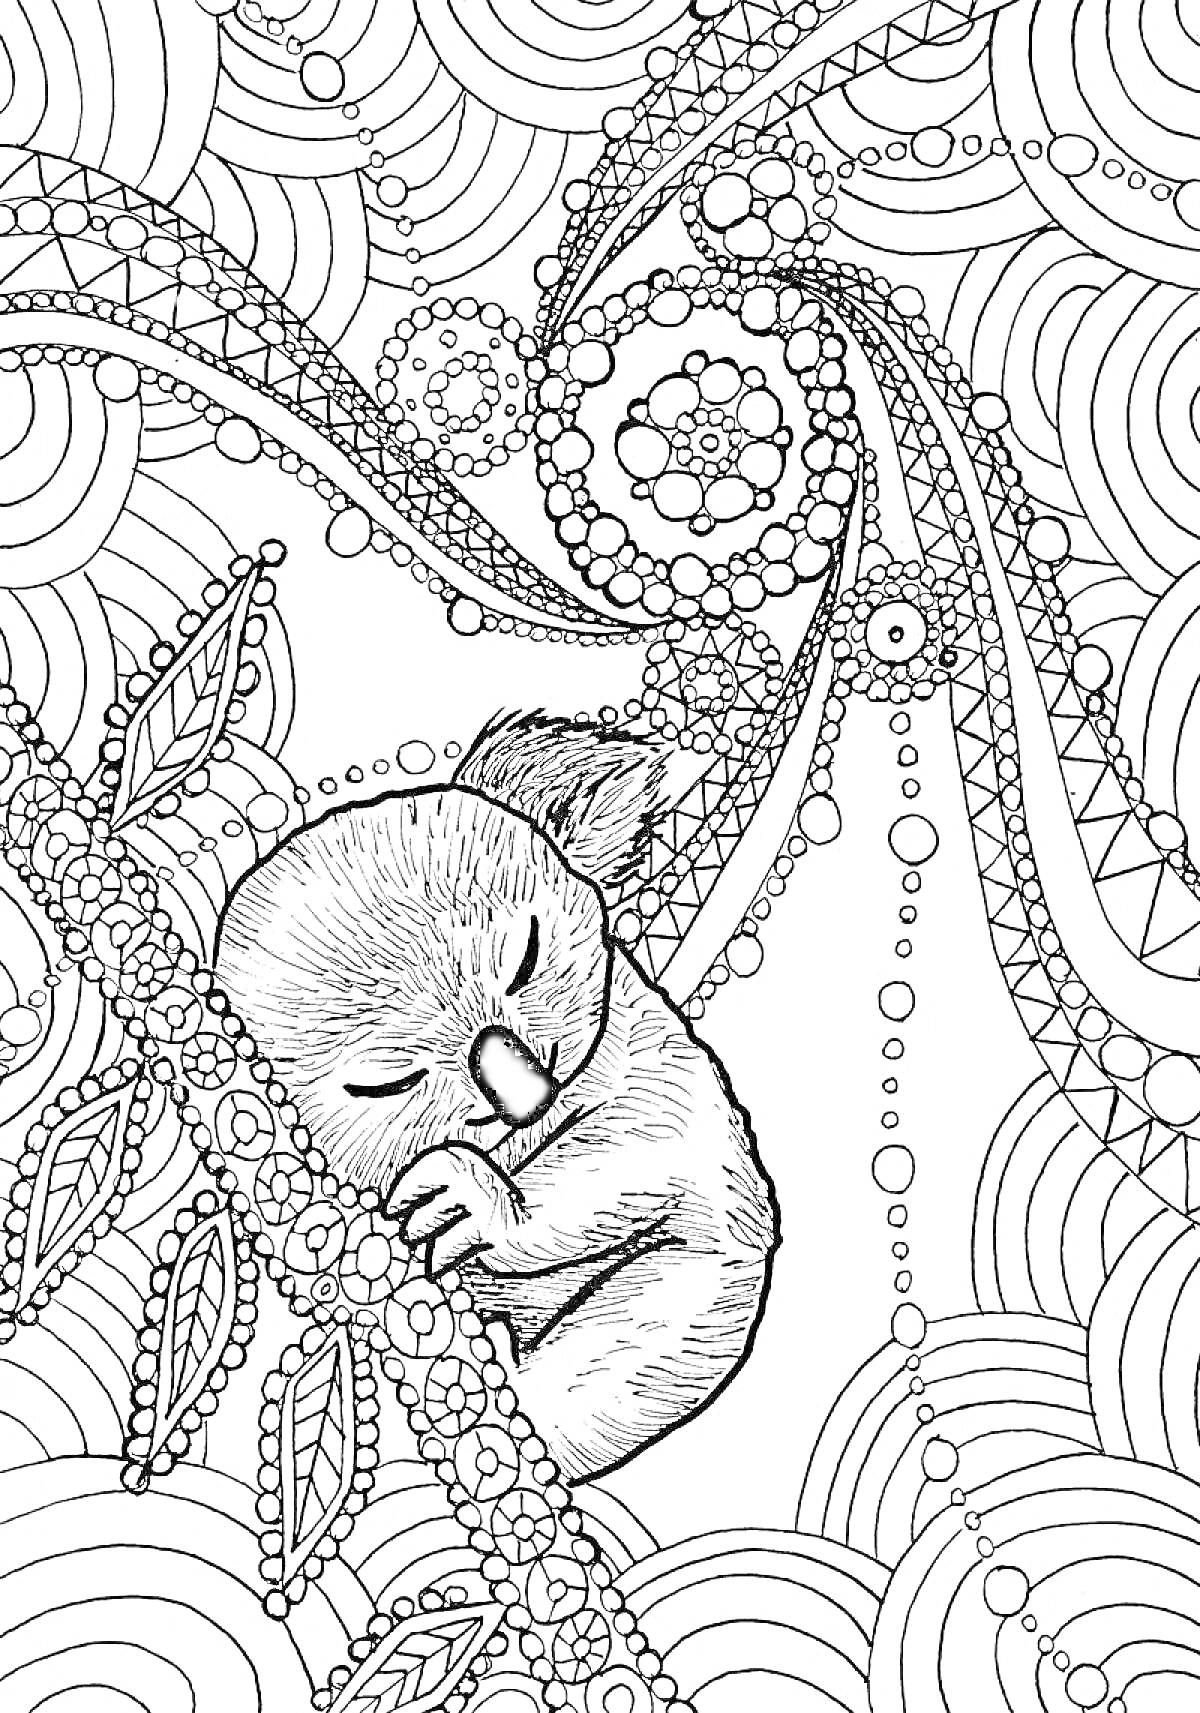 Раскраска Коала на ветке в окружении абстрактных узоров